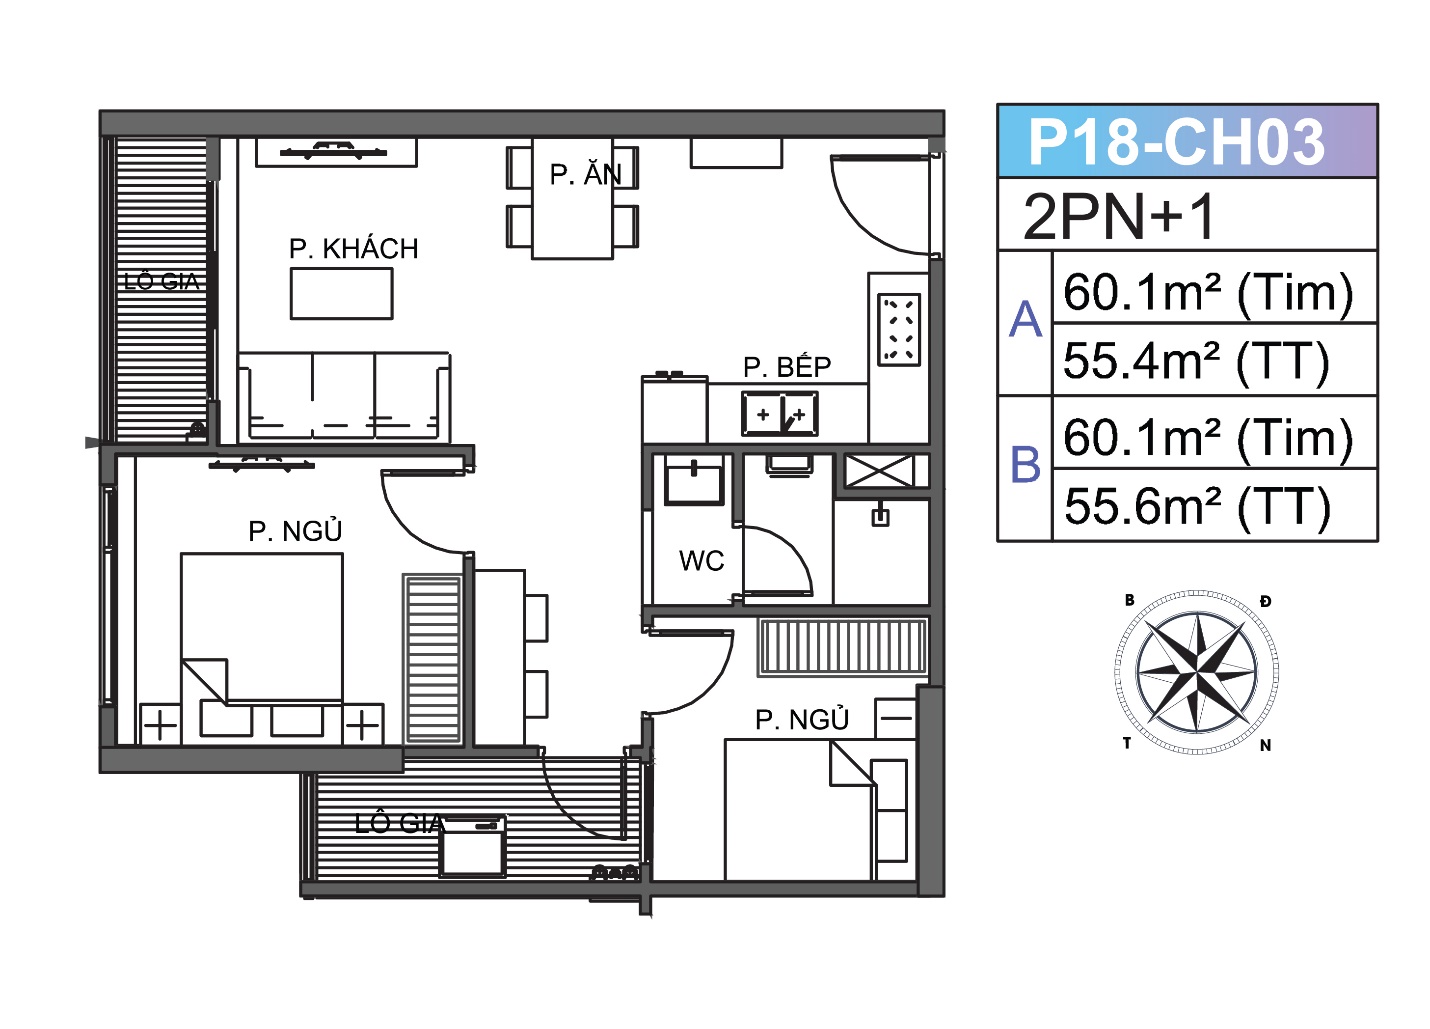 Có nên đầu tư mua căn hộ 2 phòng ngủ + 1 để cho thuê hay không?